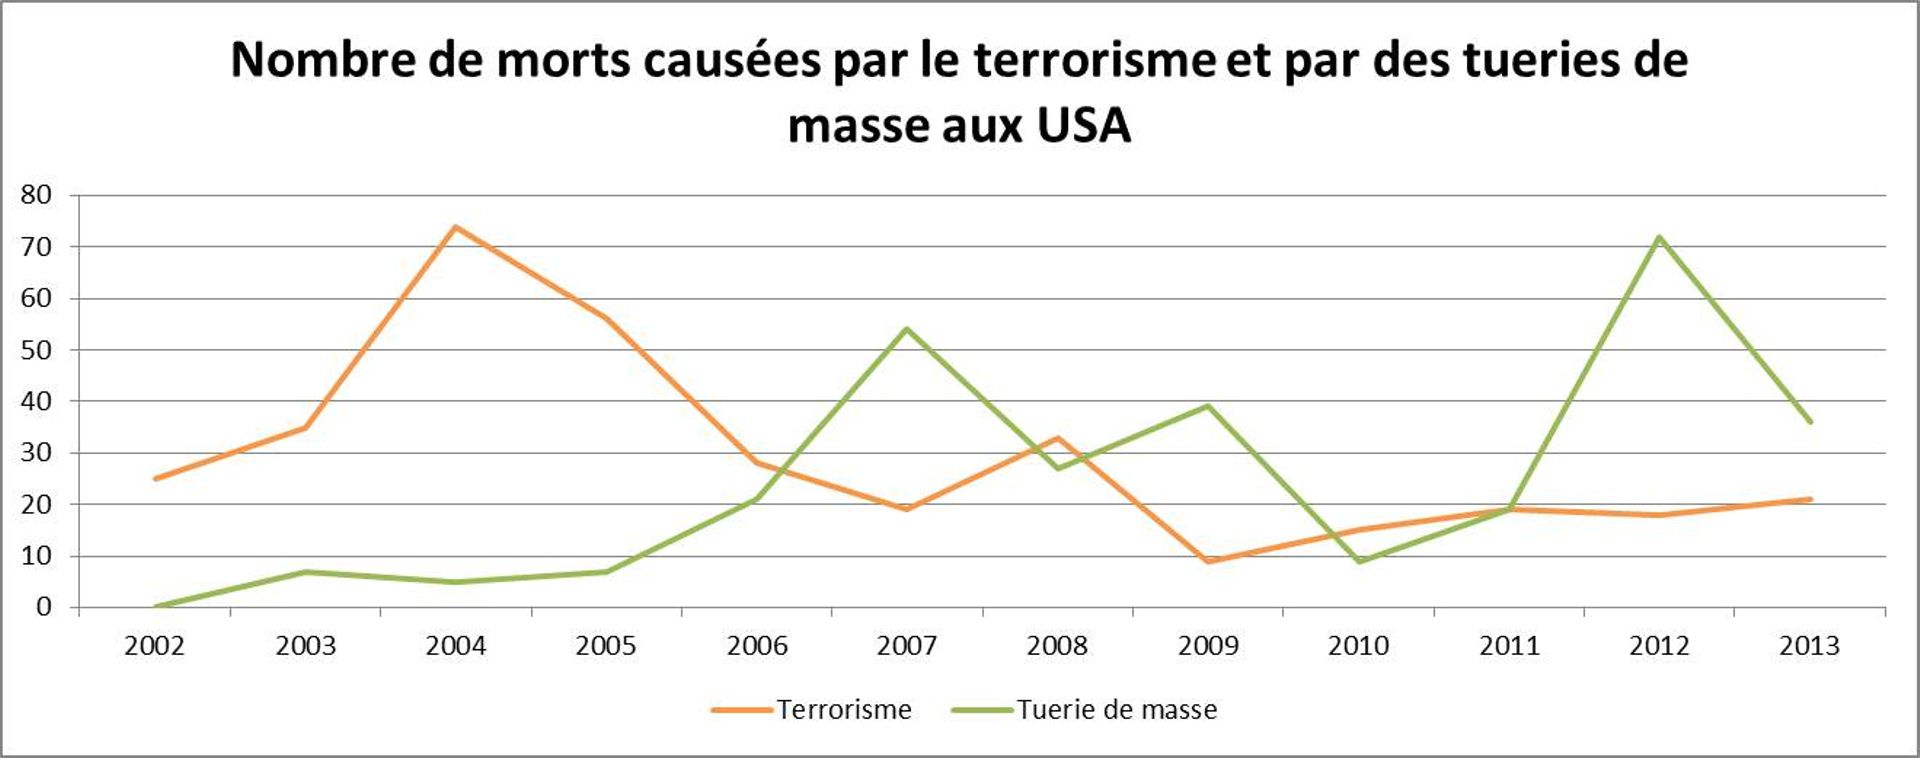 Graphique reprenant l'évolution du nombre de morts causées par des tueries de masse et par le terrorisme aux États-Unis, de 2002 à 2013.
(Source : http://www.motherjones.com/politics/2012/12/mass-shootings-mother-jones-full-data)